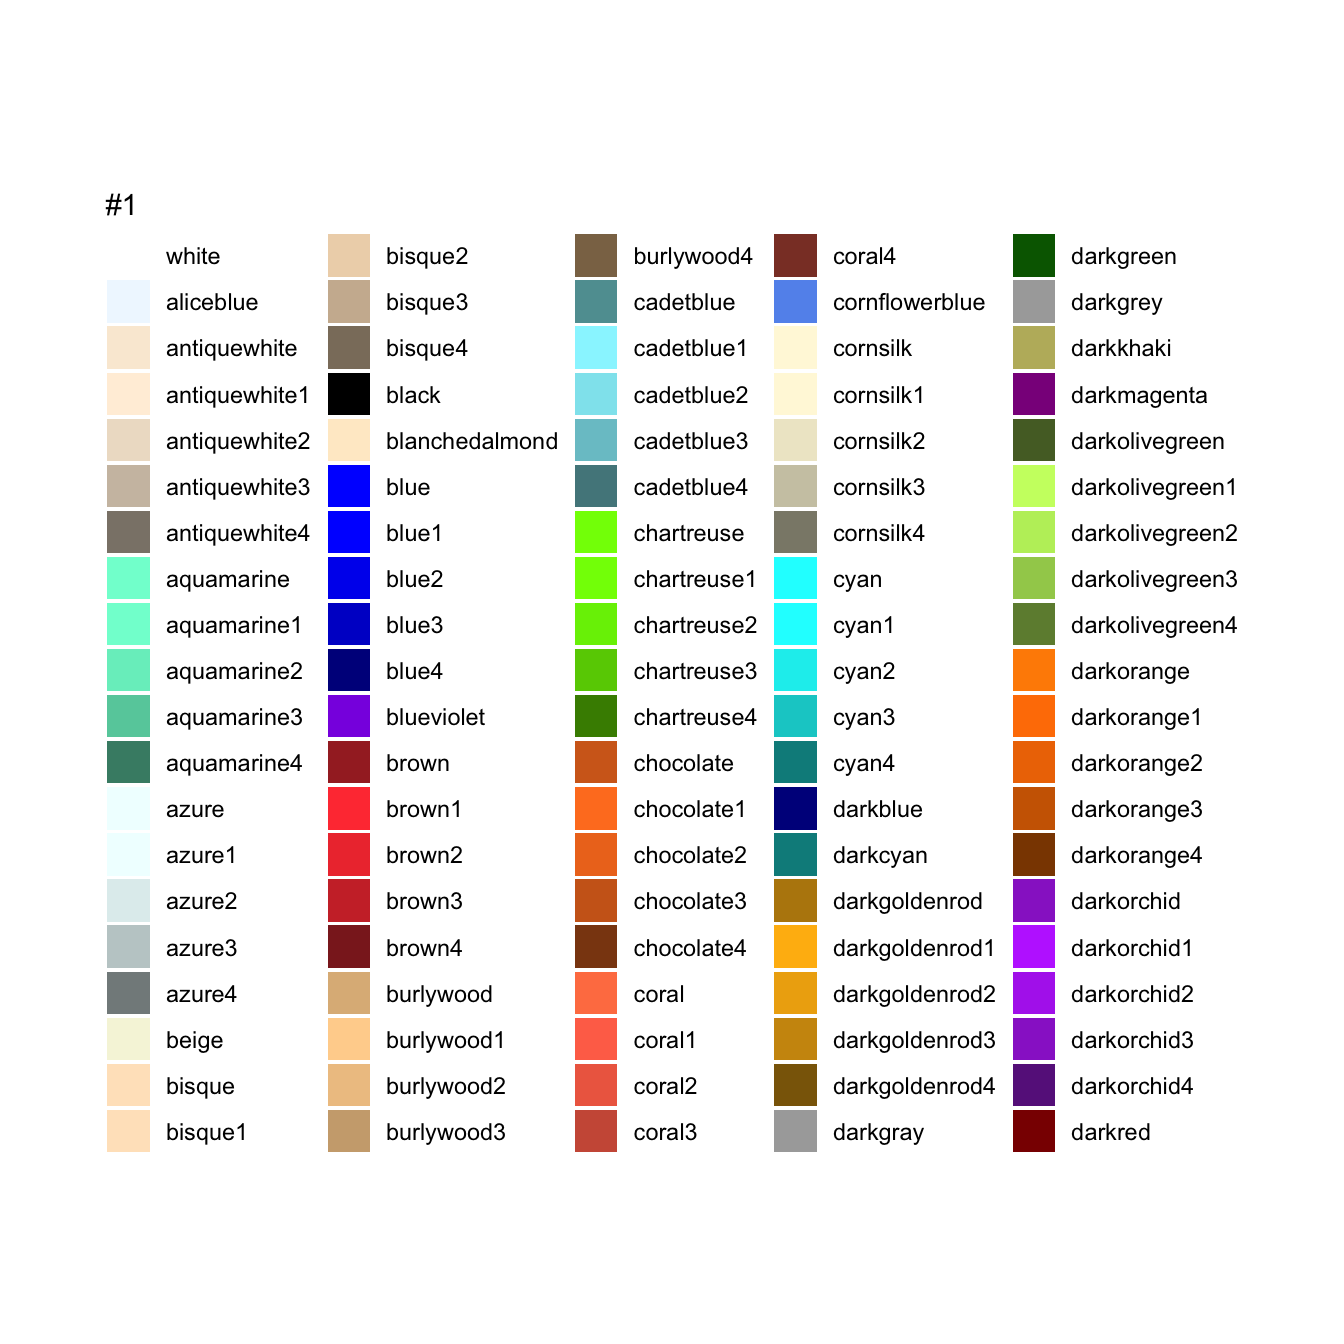 Noms de couleurs dans R